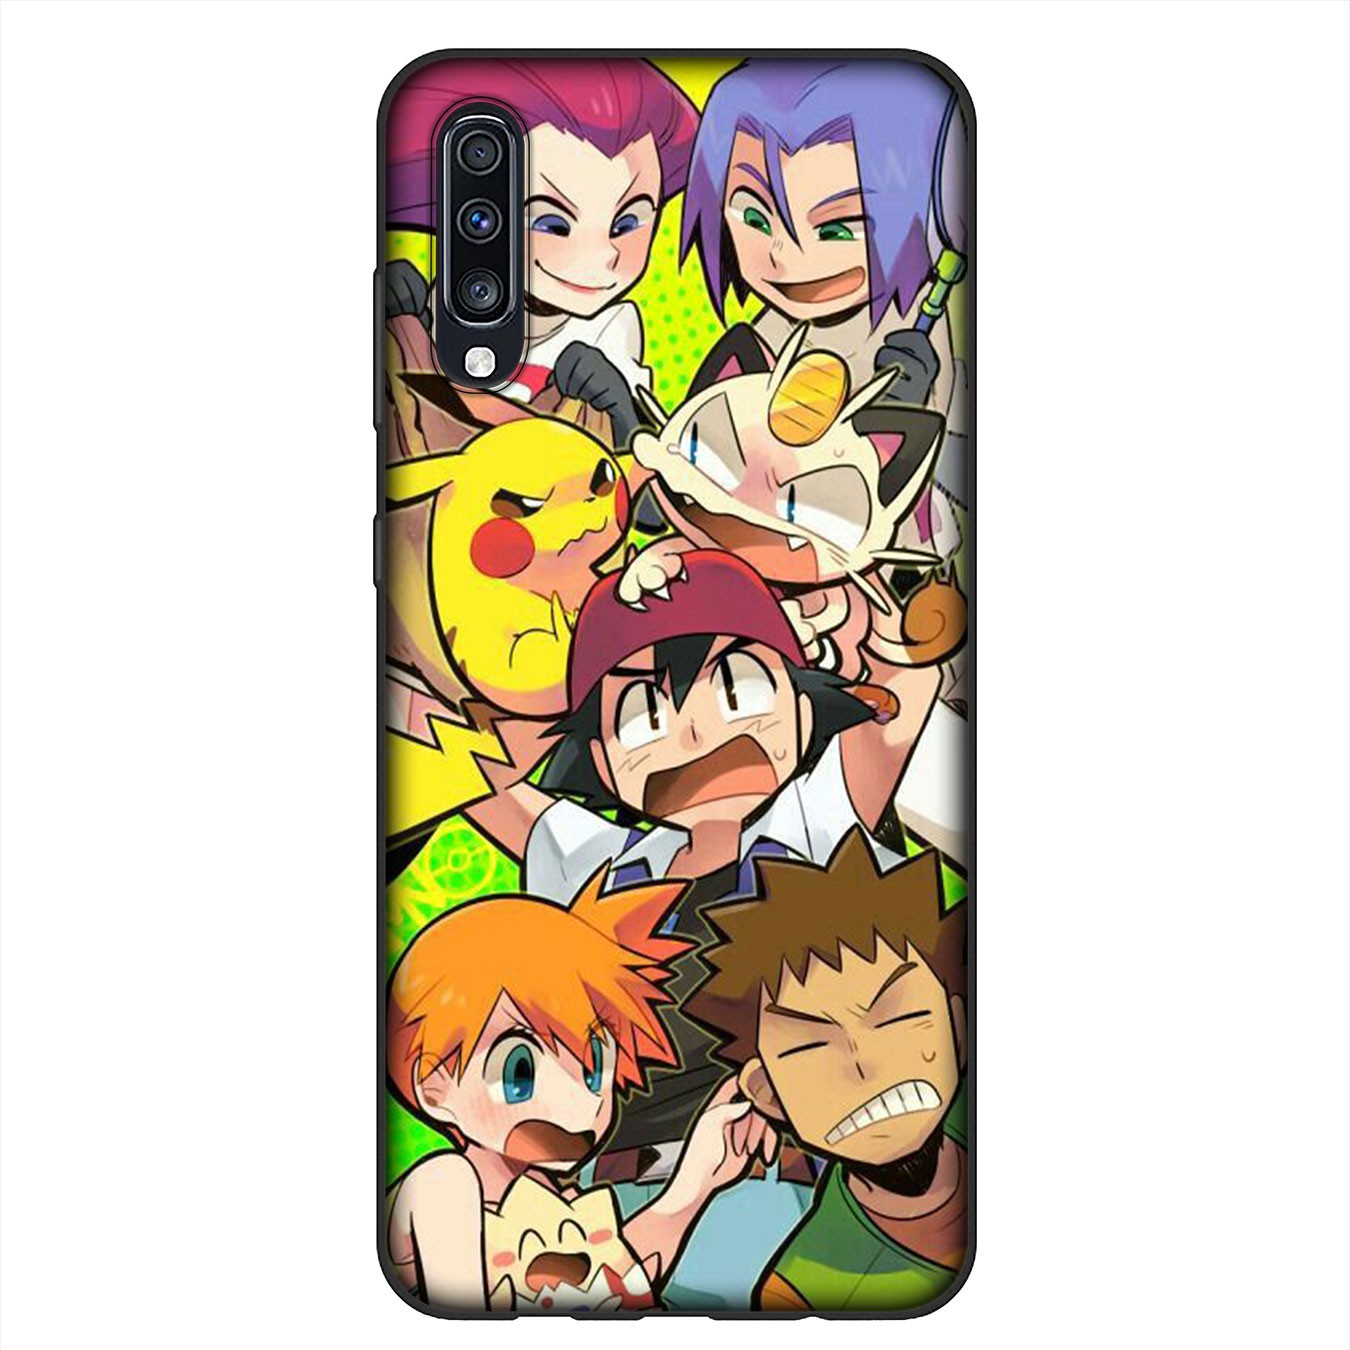 Soft Silicone Samsung Galaxy Note 20 Ultra 10 Plus Lite 9 8 A11 A51 A71 + Phone Case Pikachu Pokémon cute Casing